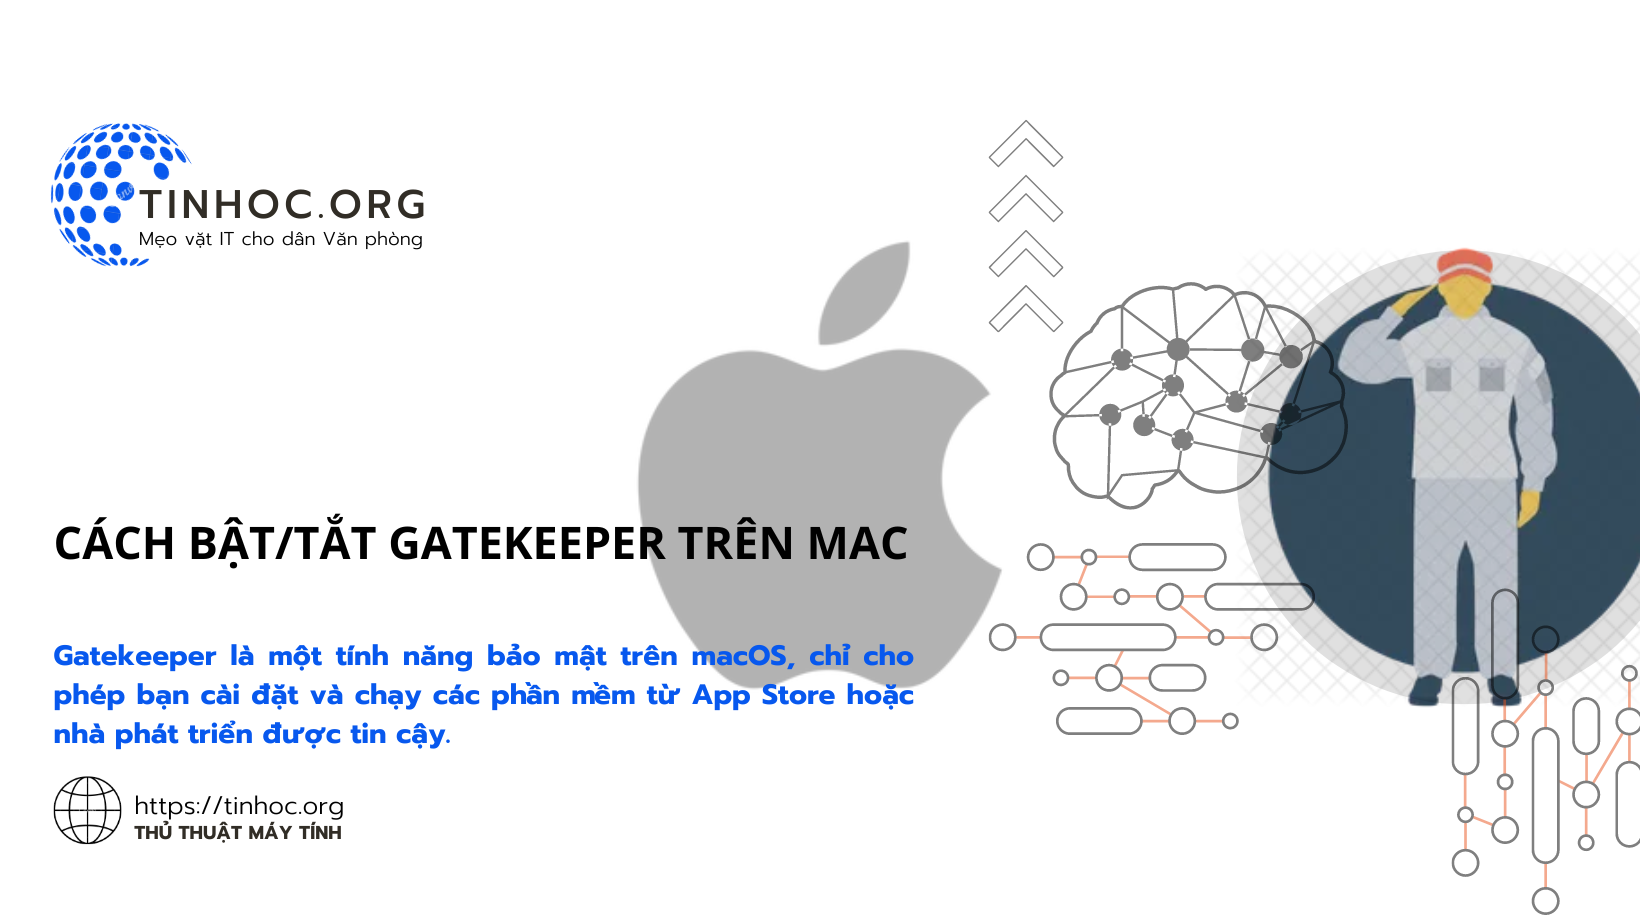 Gatekeeper là một tính năng bảo mật trên macOS, chỉ cho phép bạn cài đặt và chạy các phần mềm từ App Store hoặc nhà phát triển được tin cậy.